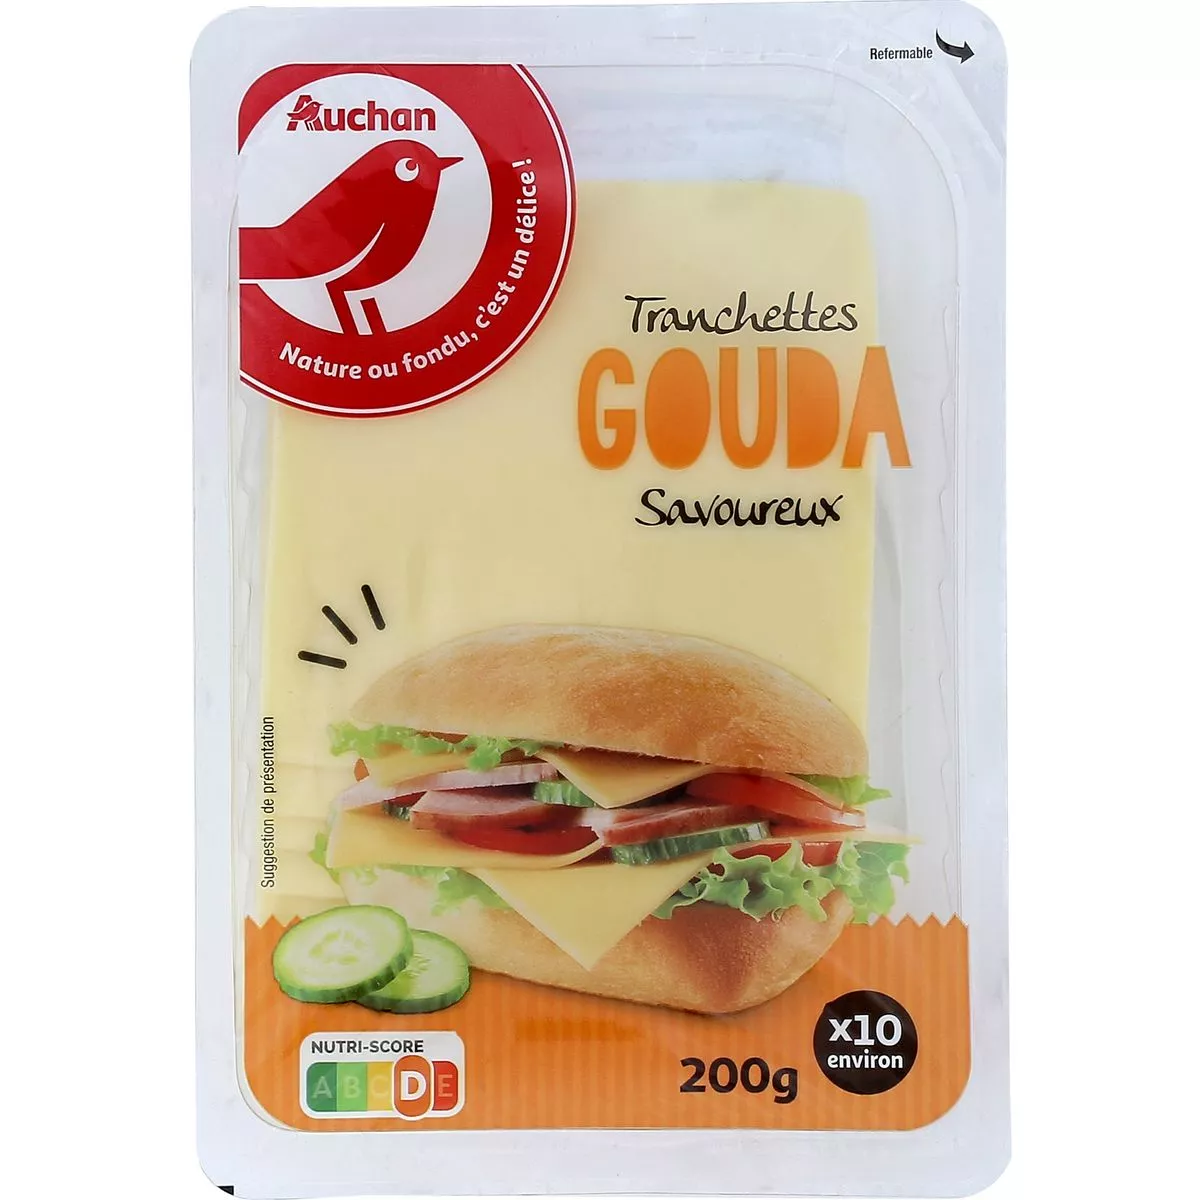 Auchan Gouda Cheese (10 slices) 200g